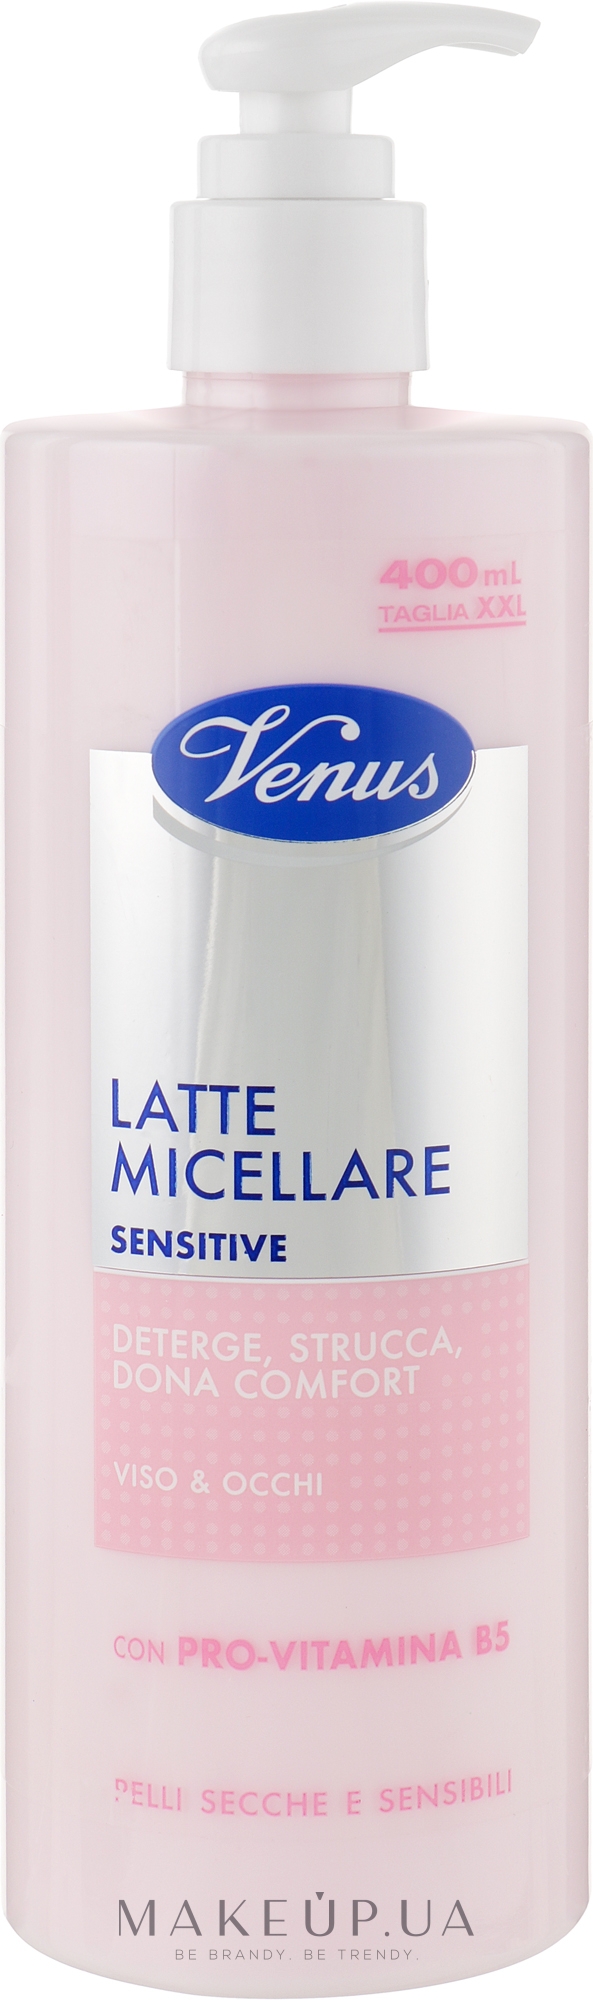 Міцелярне молочко для чутливої шкіри обличчя й очей - Venus Latte Micellare Sensitive — фото 400ml